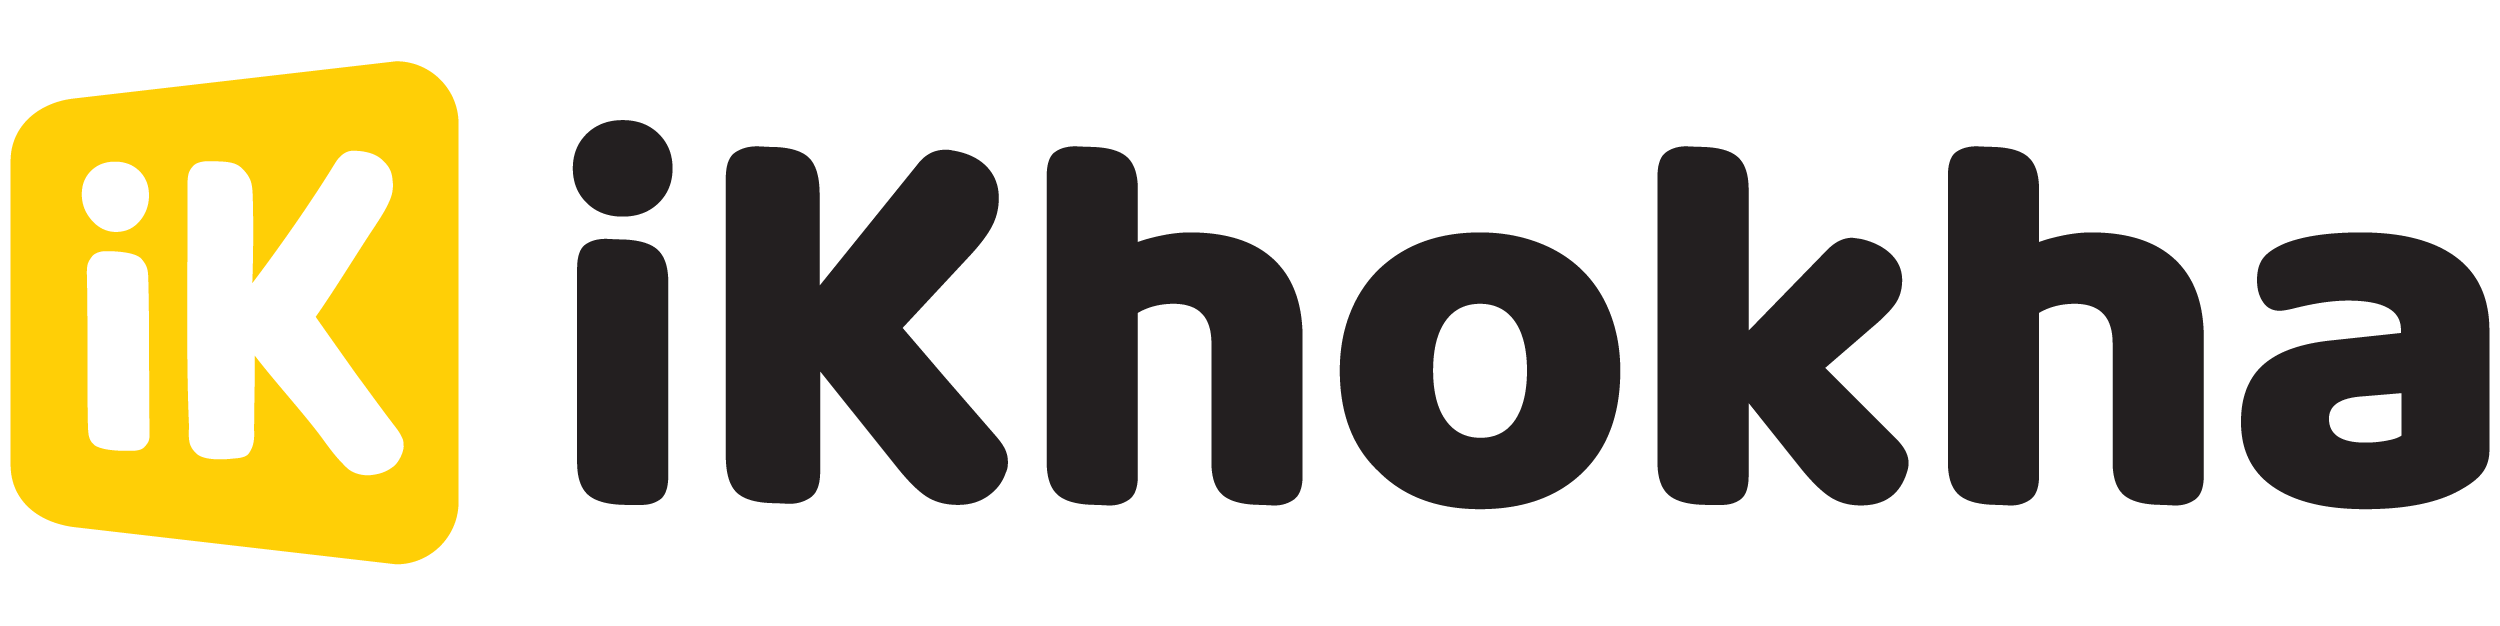 Ikhokha